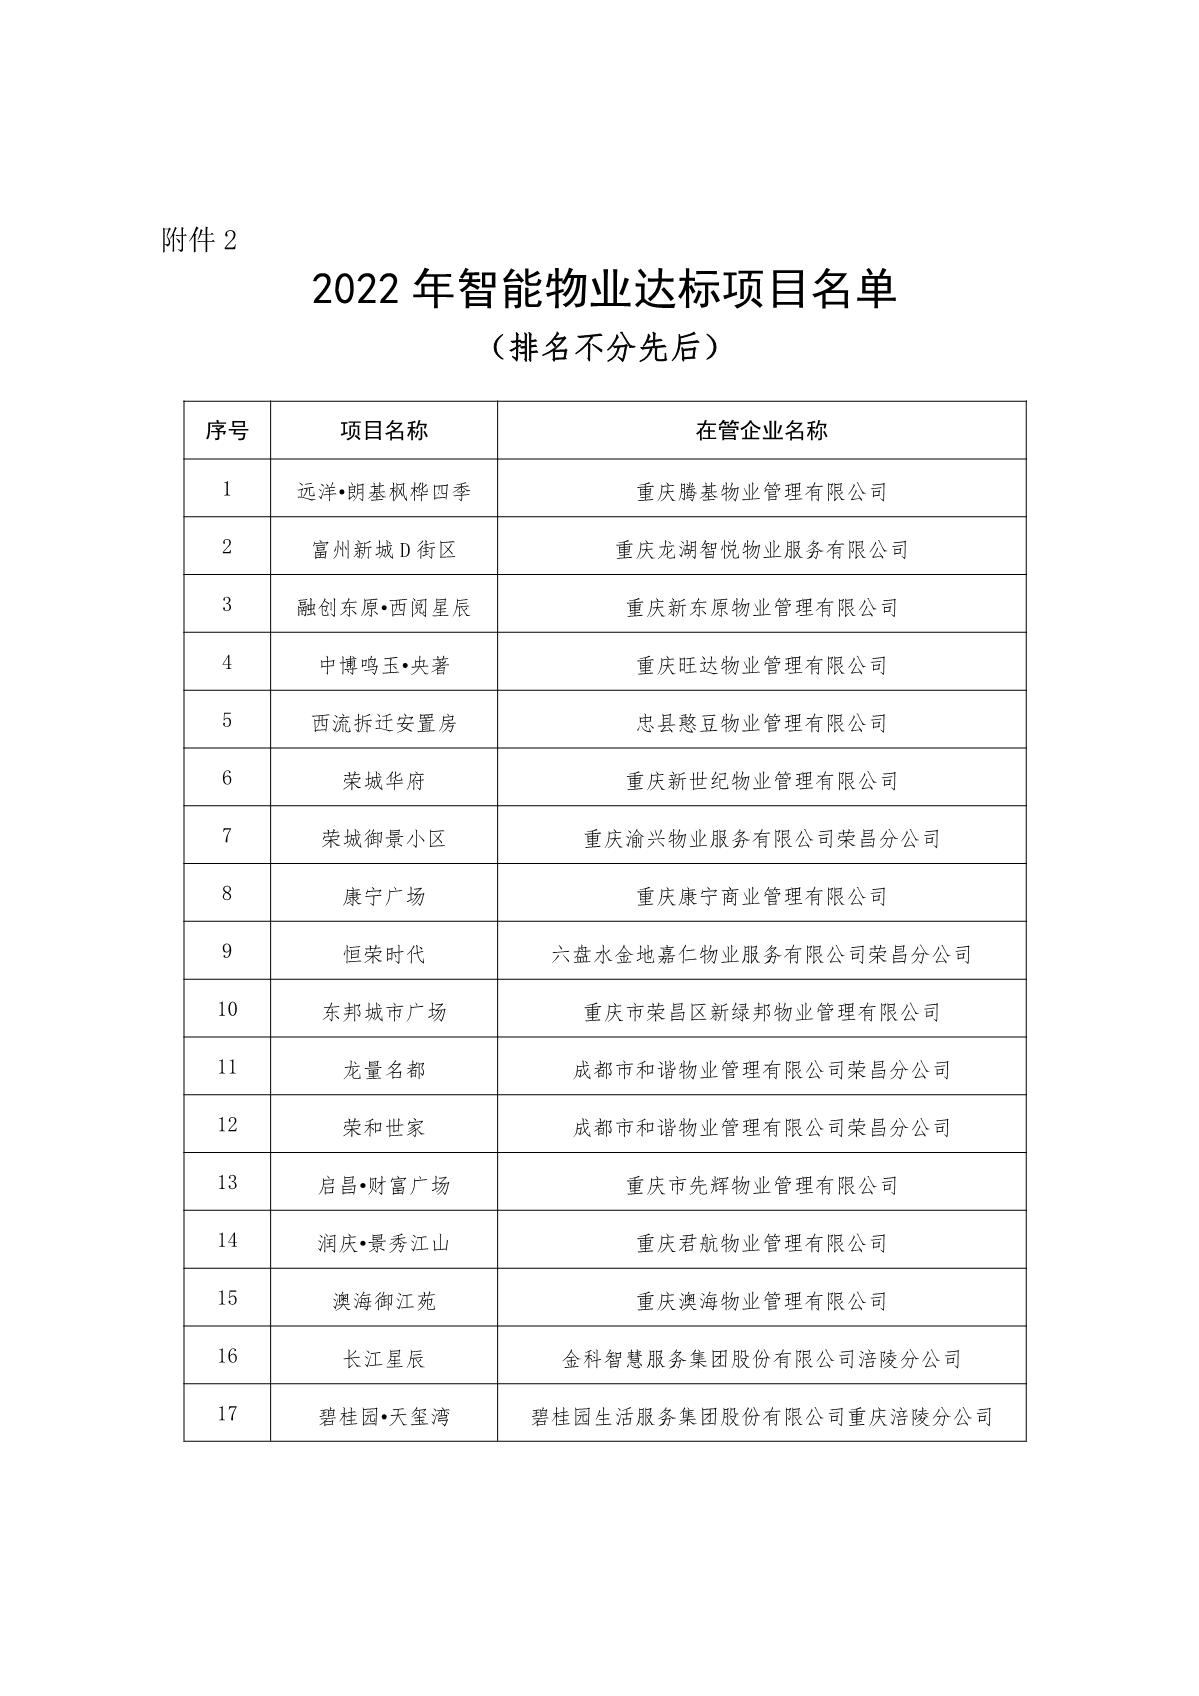 渝物协[2023]2号重庆市物业管理协会关于表彰2022年智能物业项目的通报_7.JPG